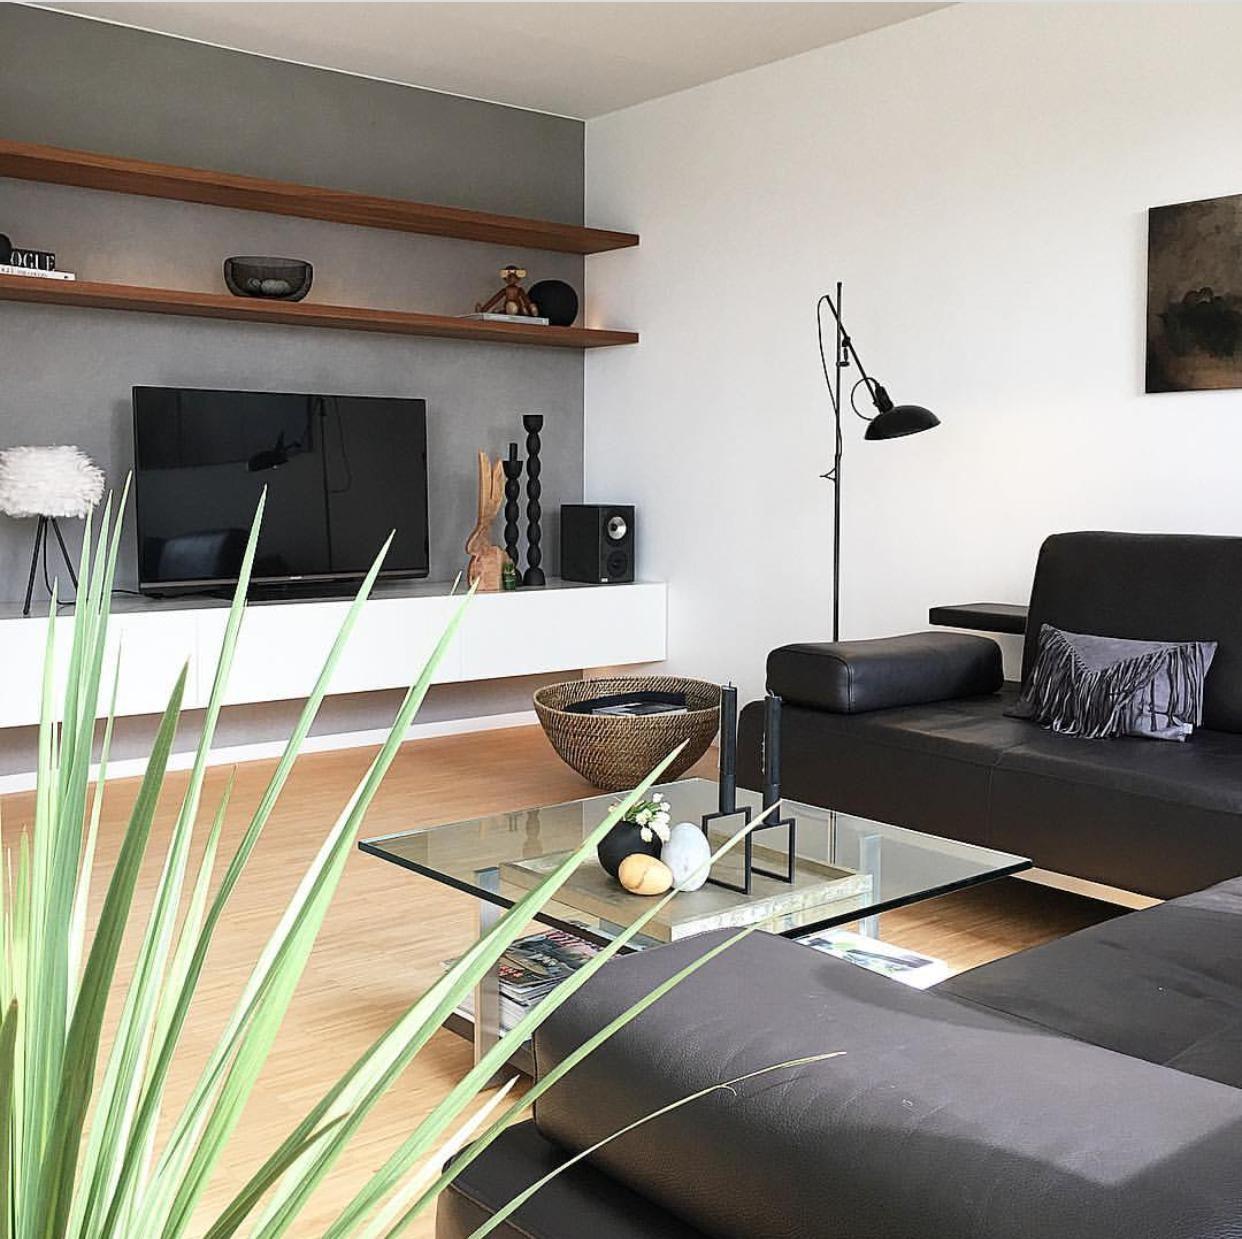 Livingroom ... endlich Sonne ☀️ 
#wohnzimmer #couch #livingroom #wohnzimmereinrichtung #betontechnik